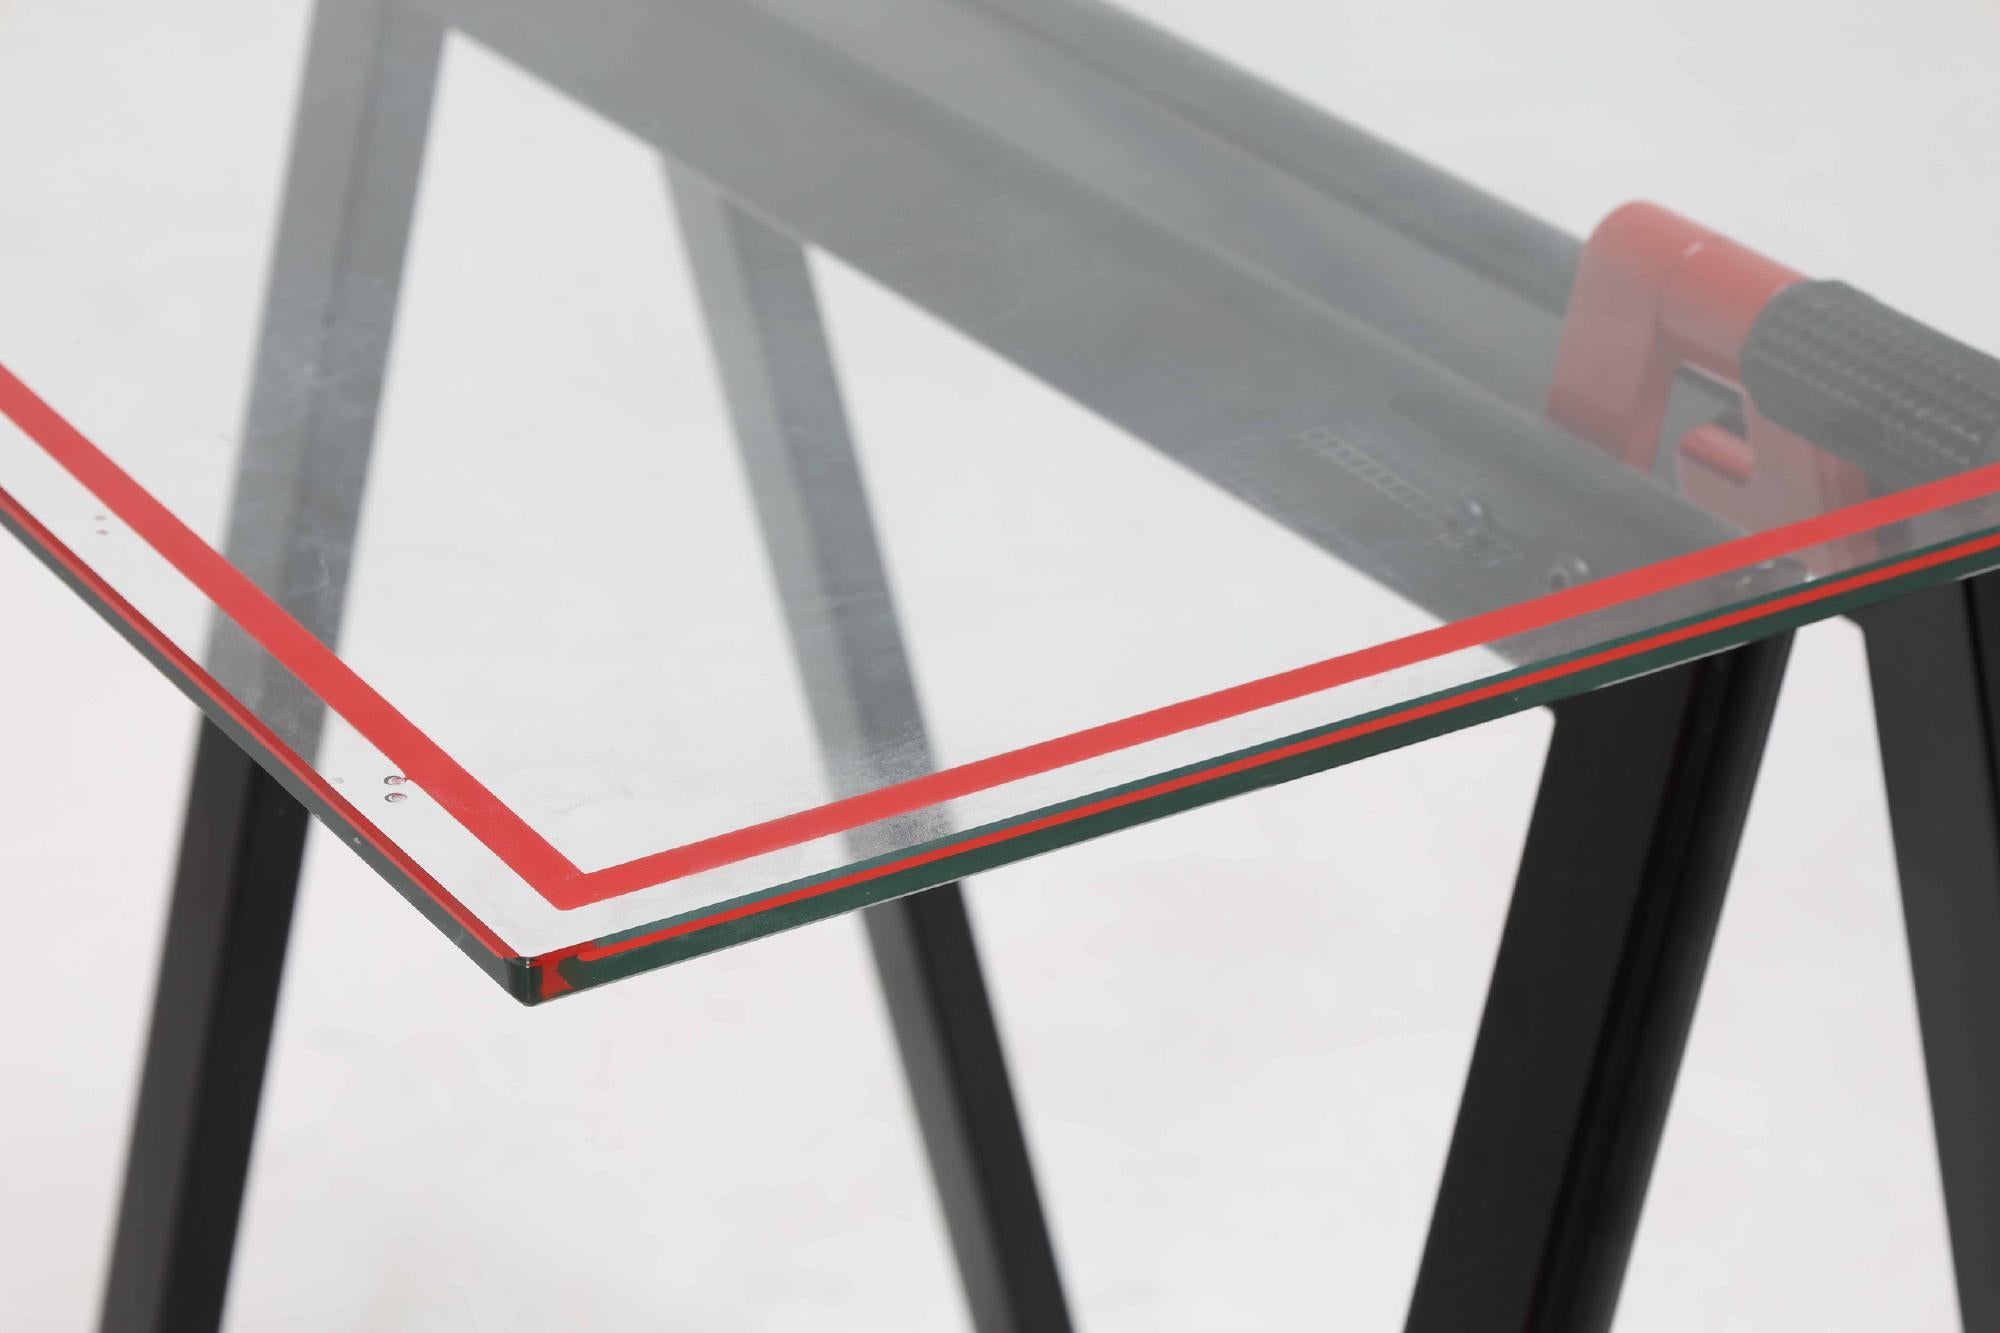 Arbeitstisch / Schreibtisch mit originaler Glasplatte mit zwei schwarz und rot gefärbten, klappbaren Sägeblattbeinen aus Metall. Modell Cardine, Teil der Geatano-Serie, entworfen in den 1970er Jahren von Gae Aulenti für Zanotta, Italien. 

Original